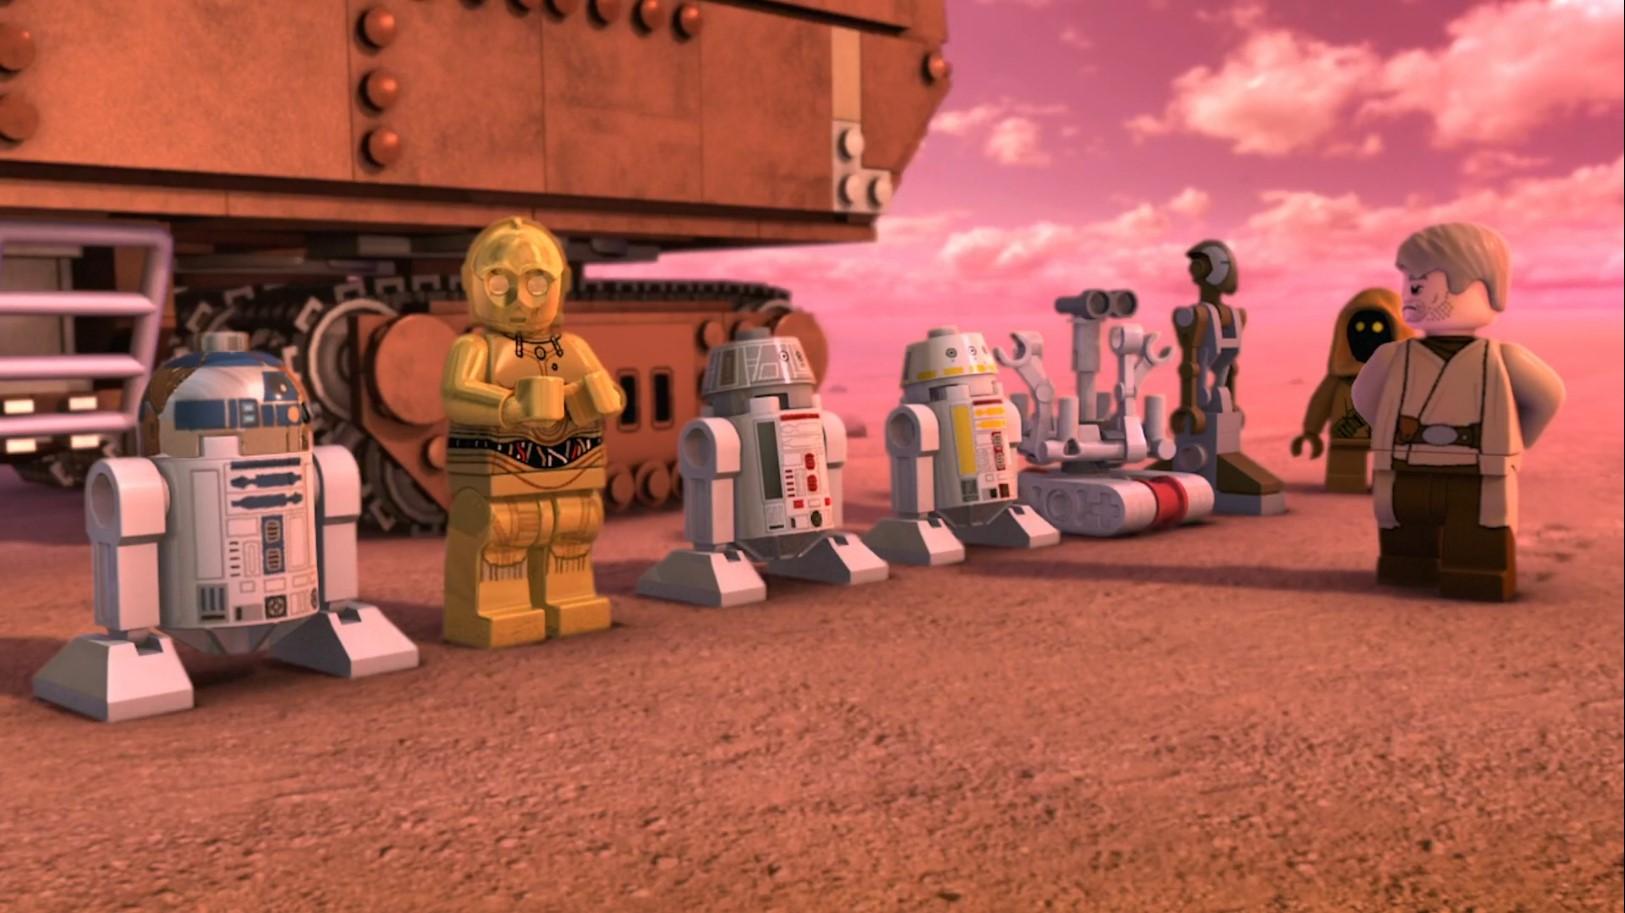 LEGO Звёздные войны: Истории дроидов